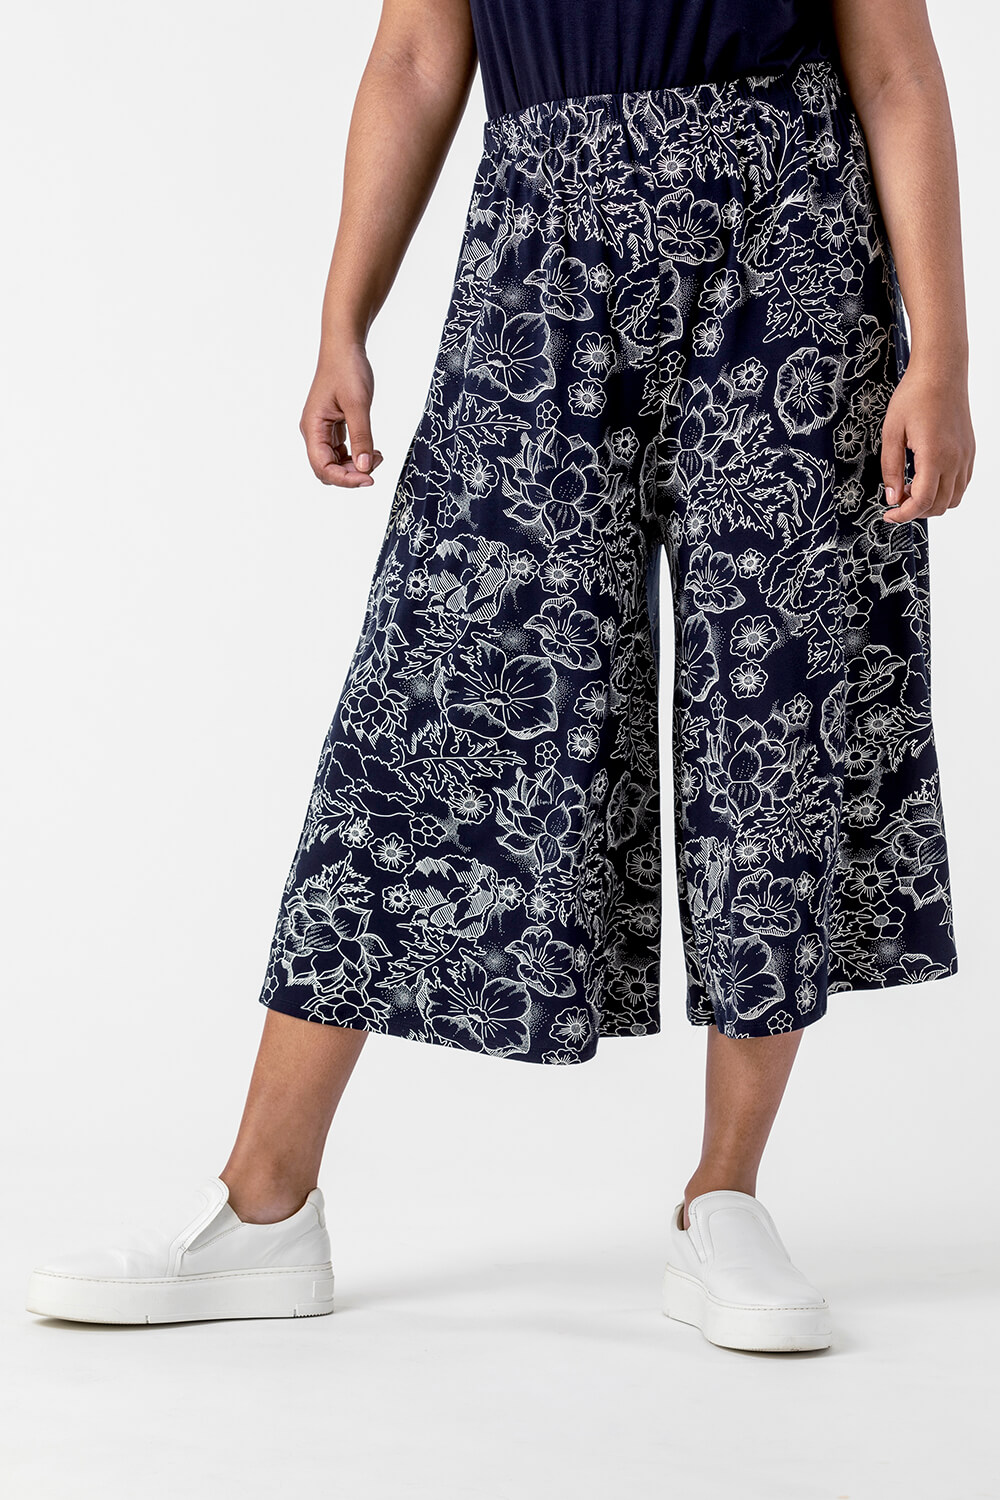 Curve Floral Print Culotte Trousers in Multi - Roman Originals UK